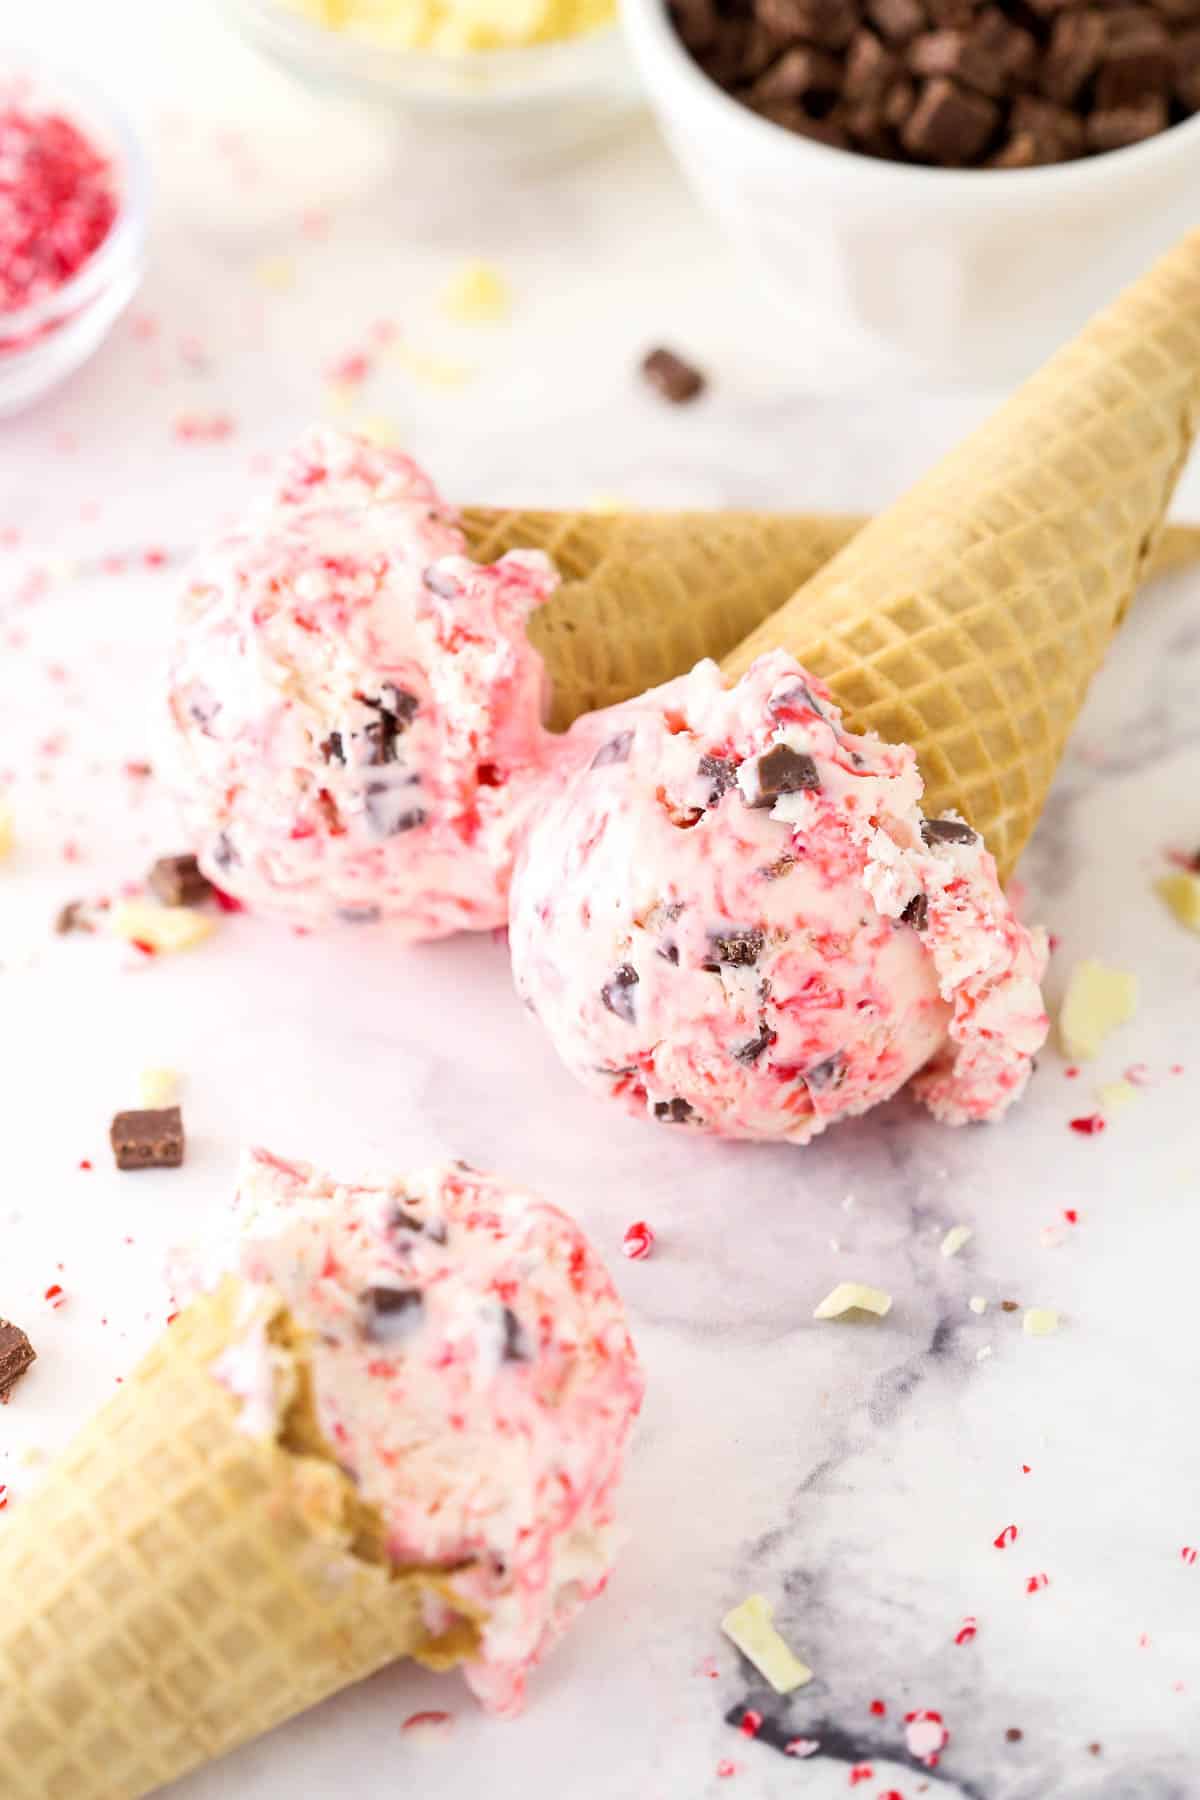 Three ice cream cones with scoops of peppermint bark ice cream